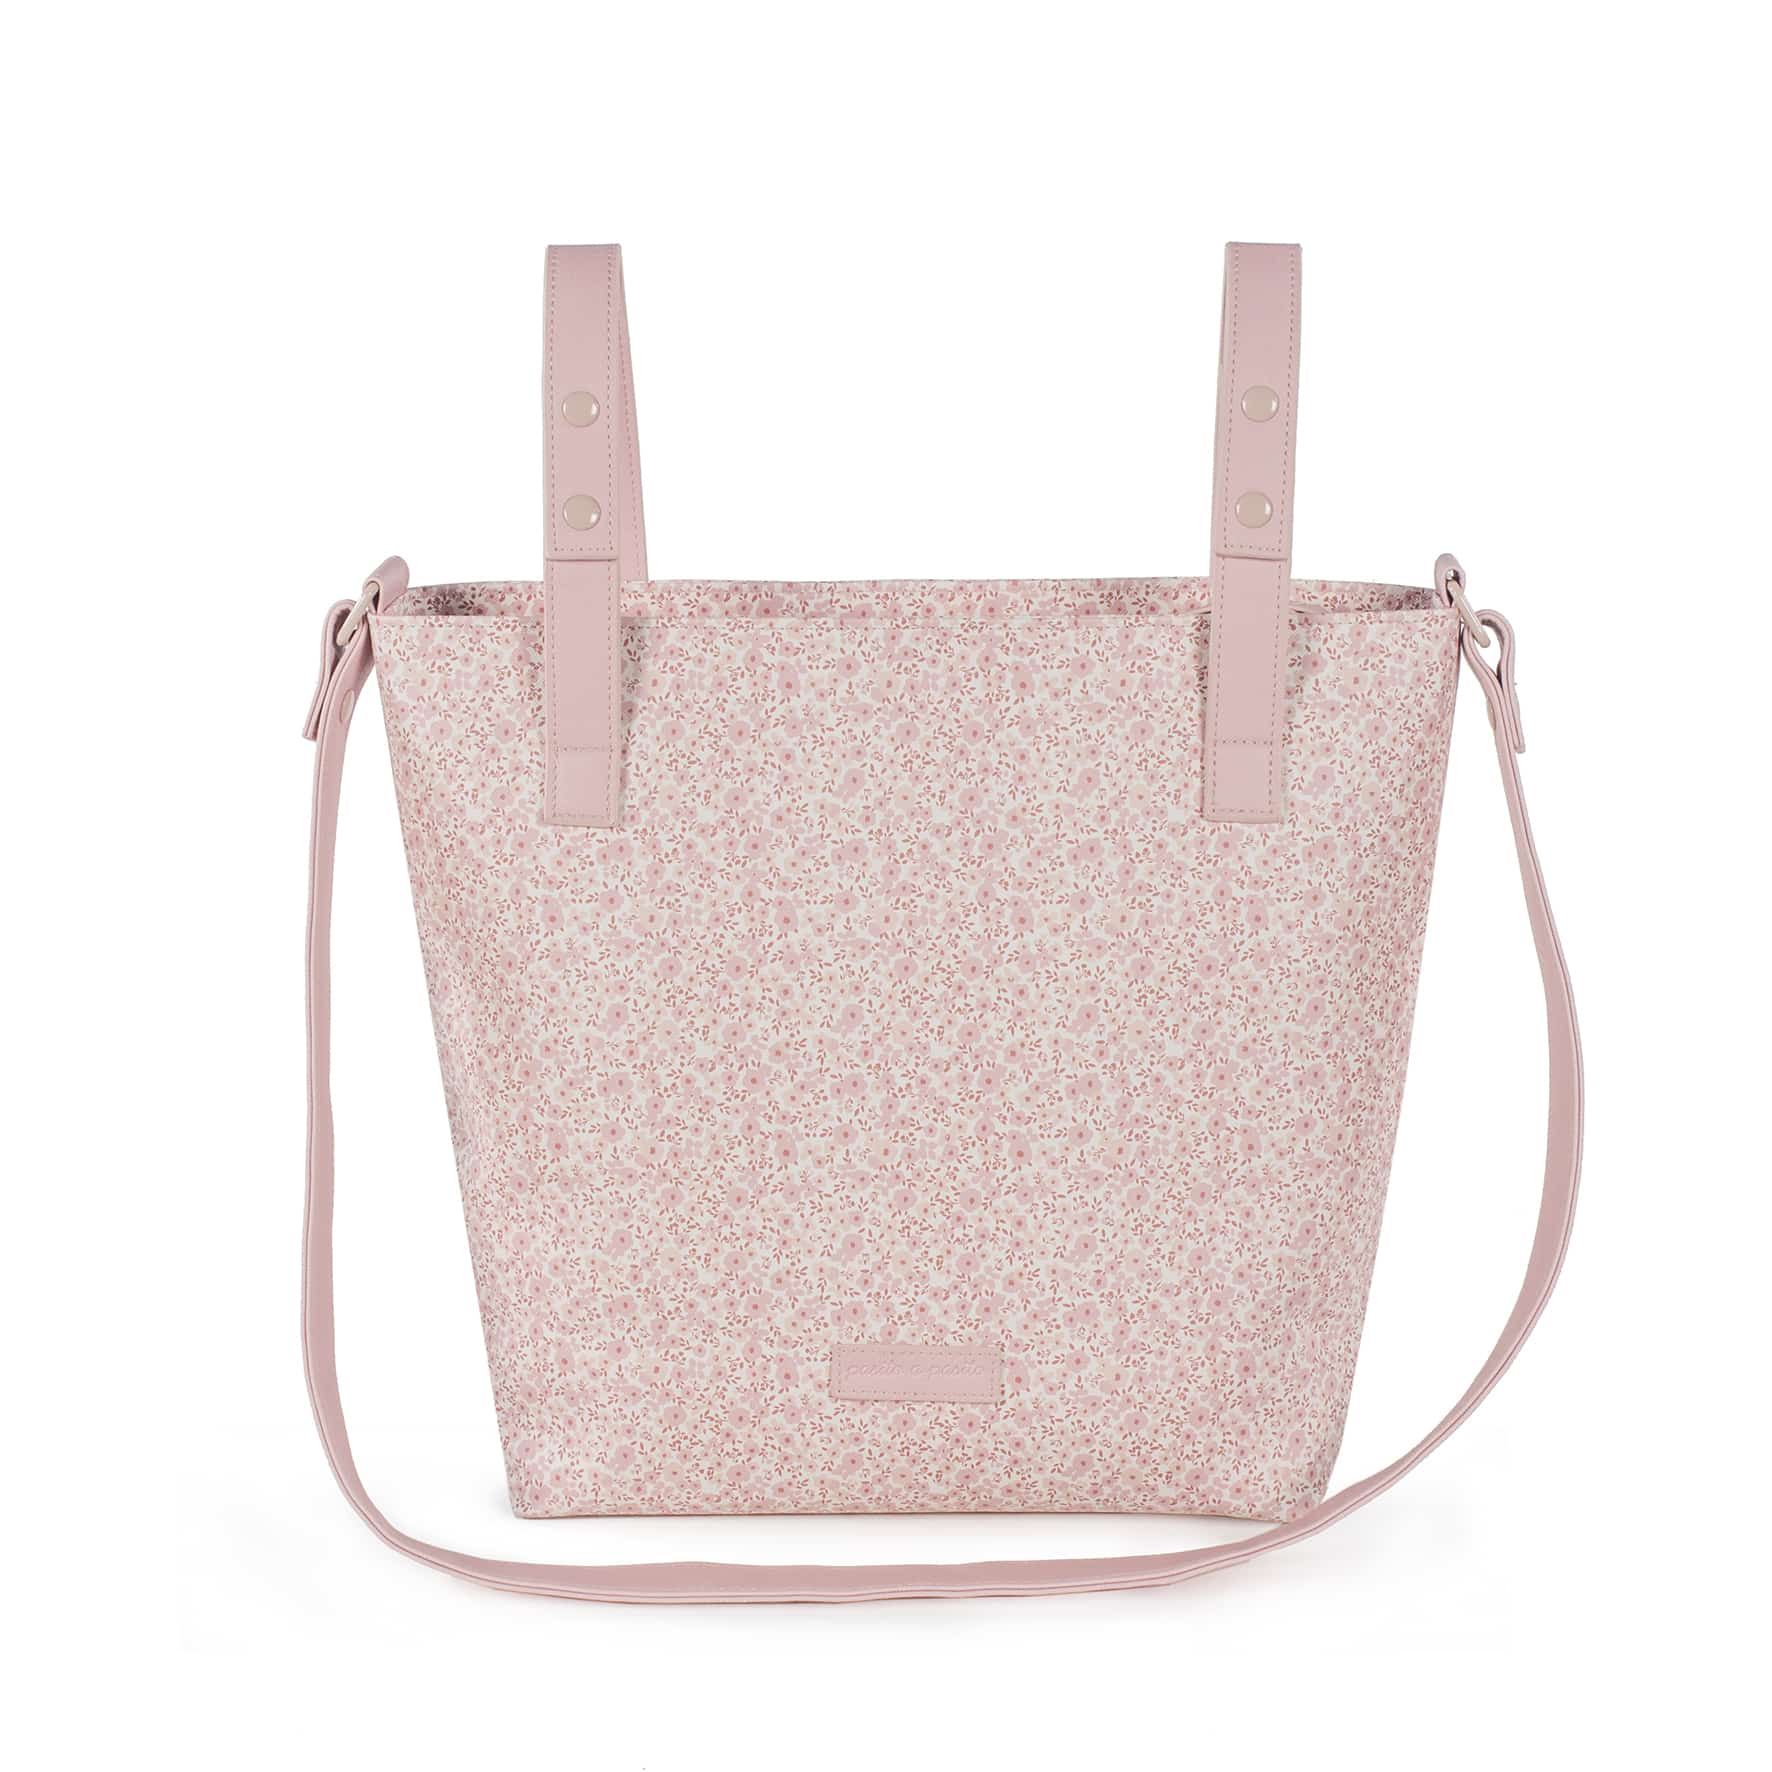 Bolsa Panera Flower Mellow Pasito a Pasito Bolsa panera o bolso para silla de paseo Flower Mellow en polipiel impresa con flores rosa y gris